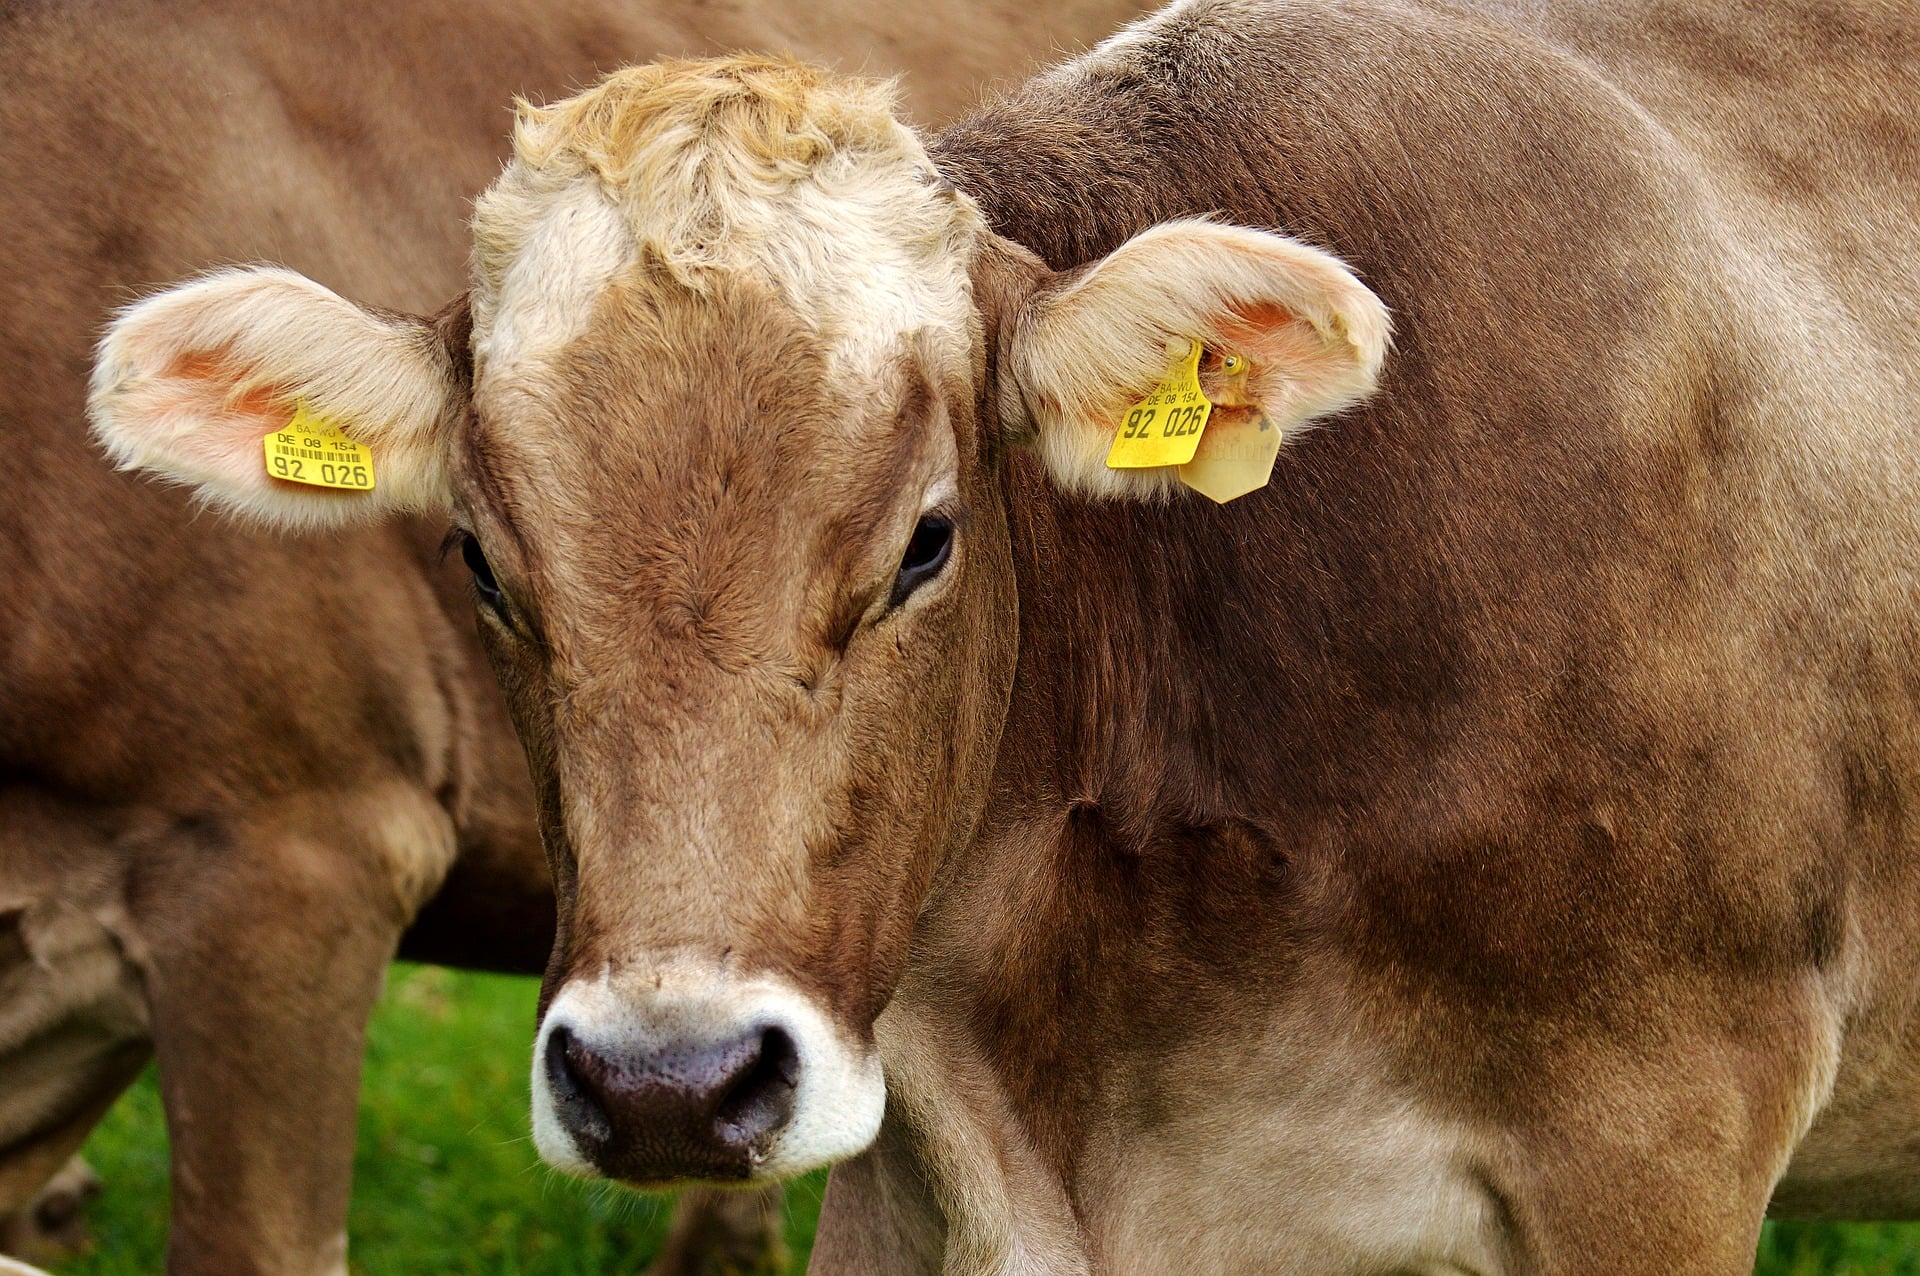 จีนระงับนำเข้าเนื้อวัวจากโรงฆ่าสัตว์ 4 แห่งในออสเตรเลีย : อินโฟเควสท์